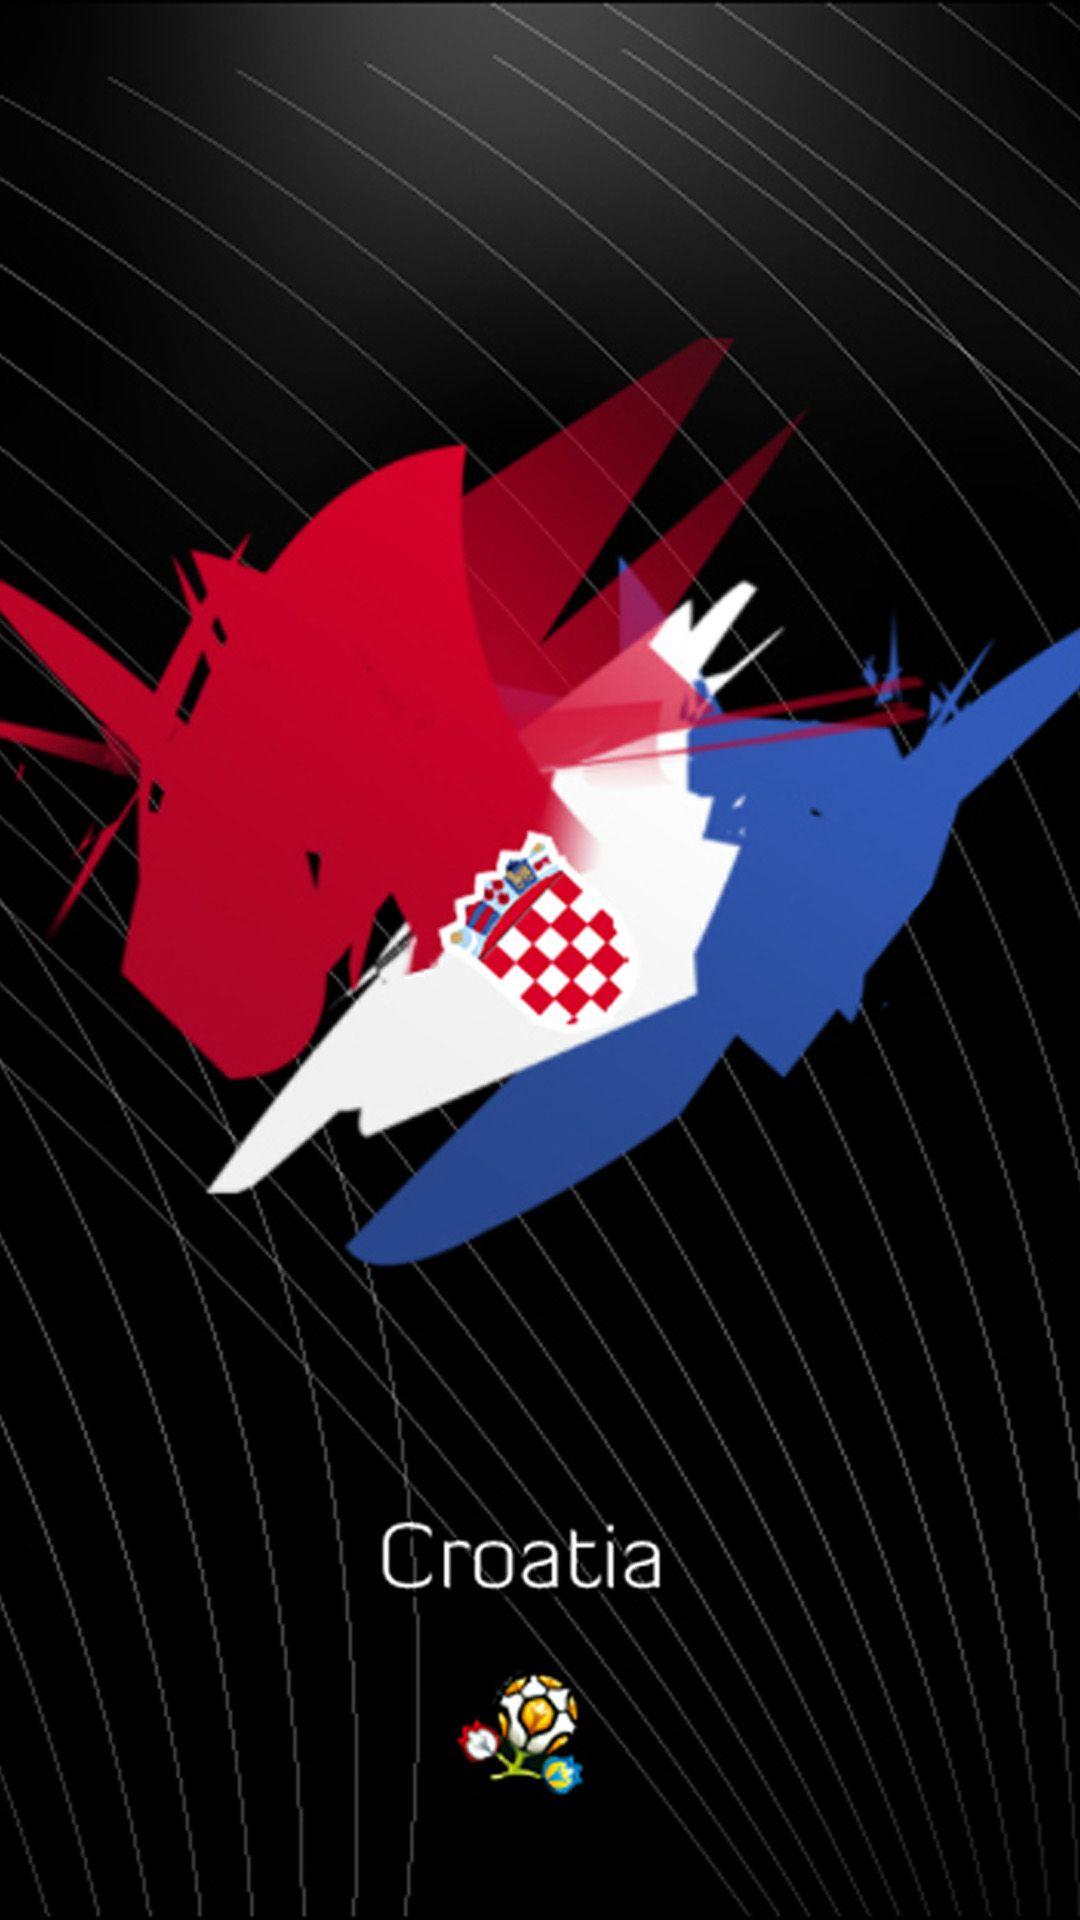 Croatia Galaxy S4 Wallpaper